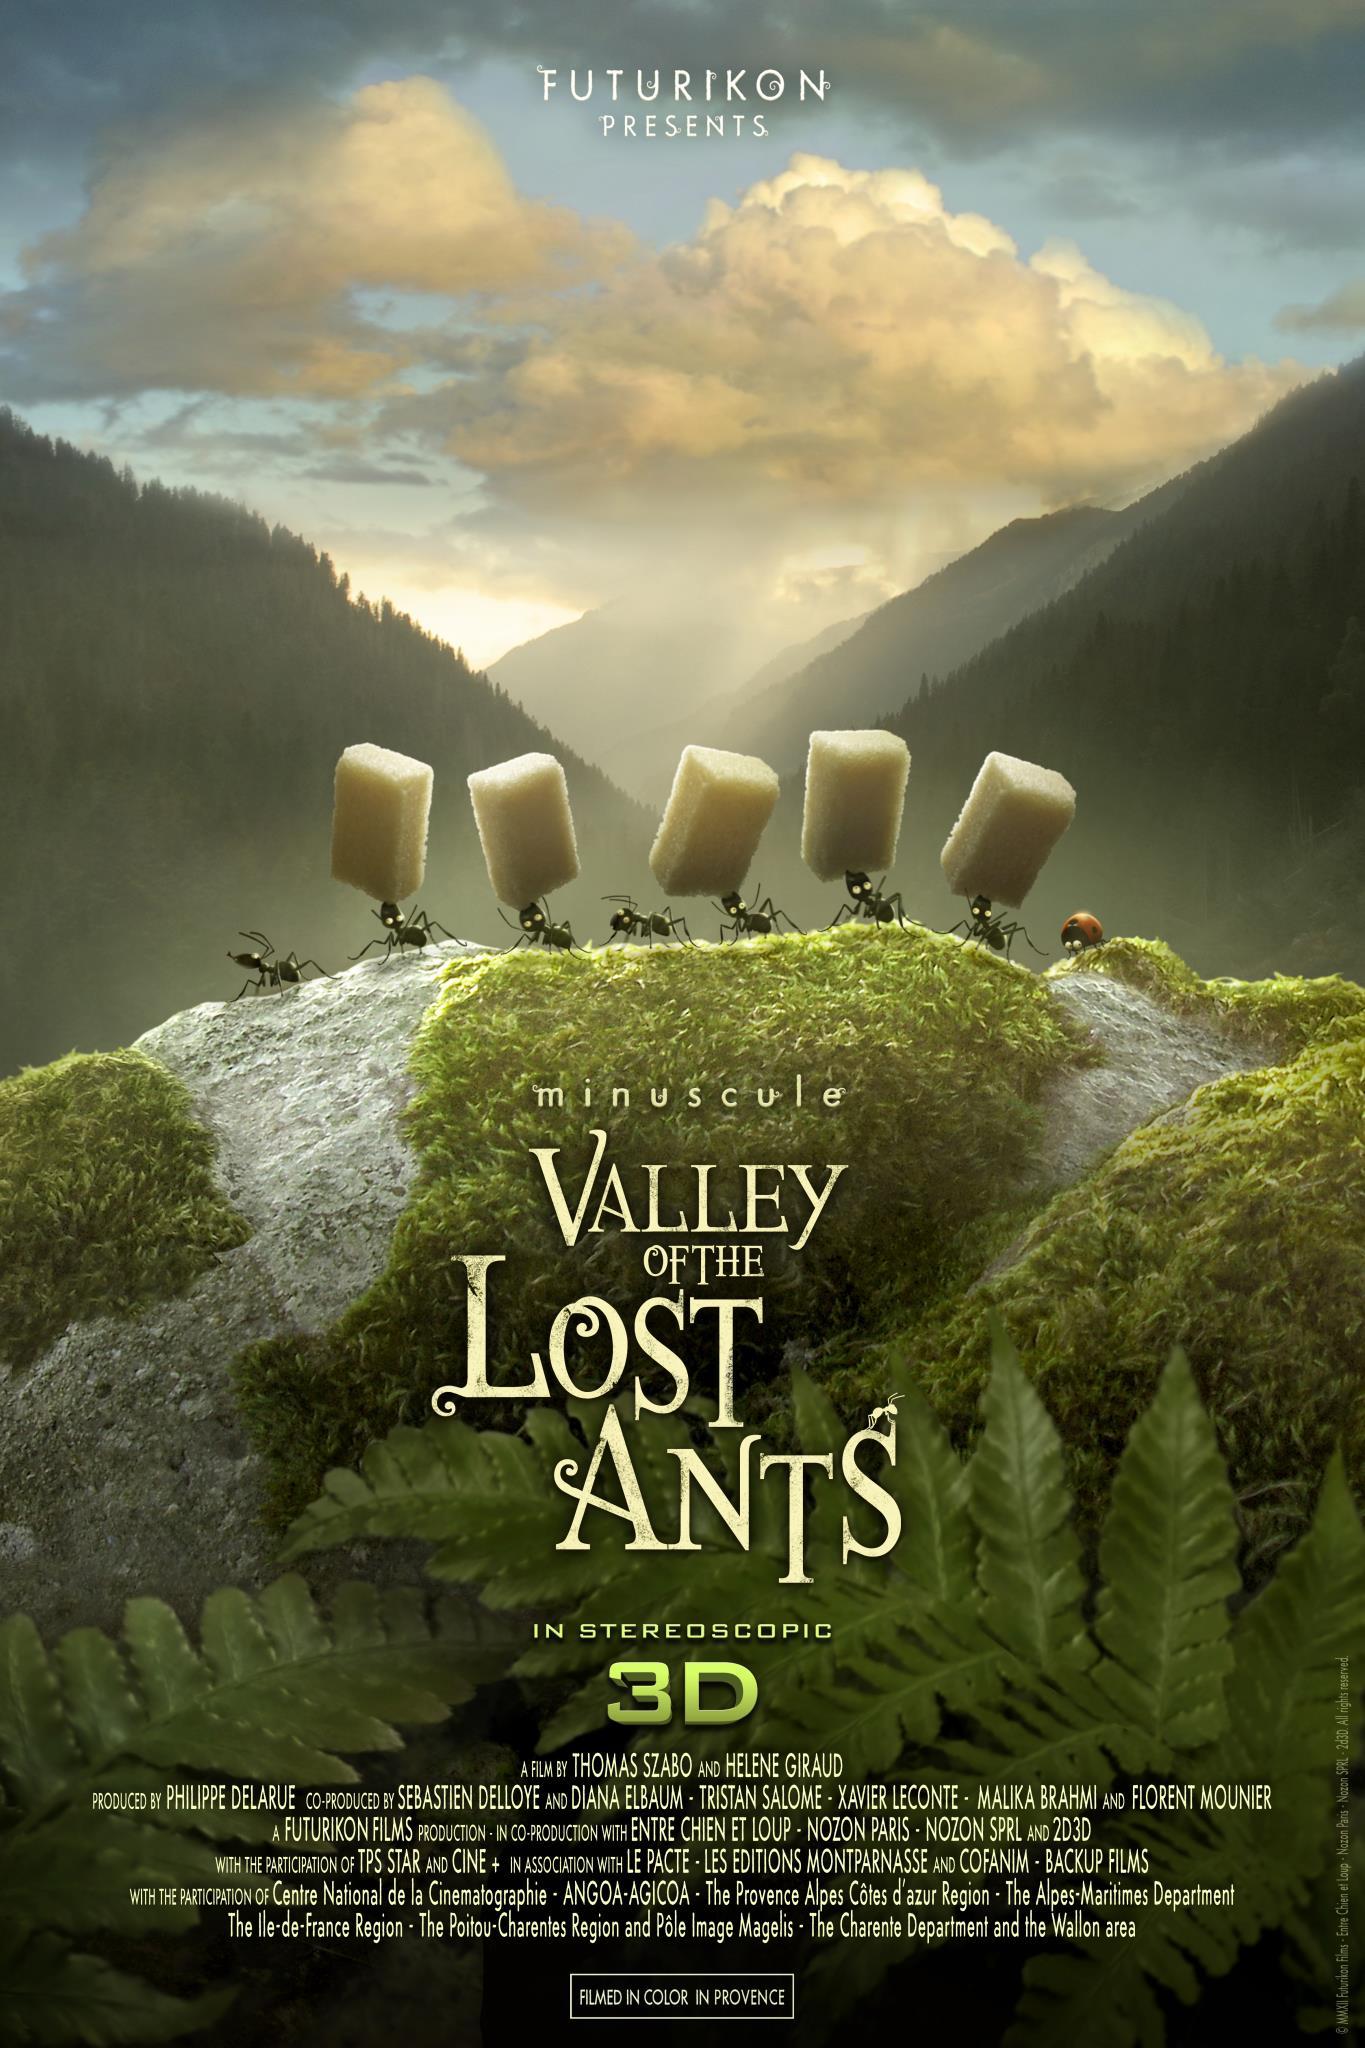 Постер фильма Букашки. Приключение в Долине муравьев | Minuscule - La vallée des fourmis perdues